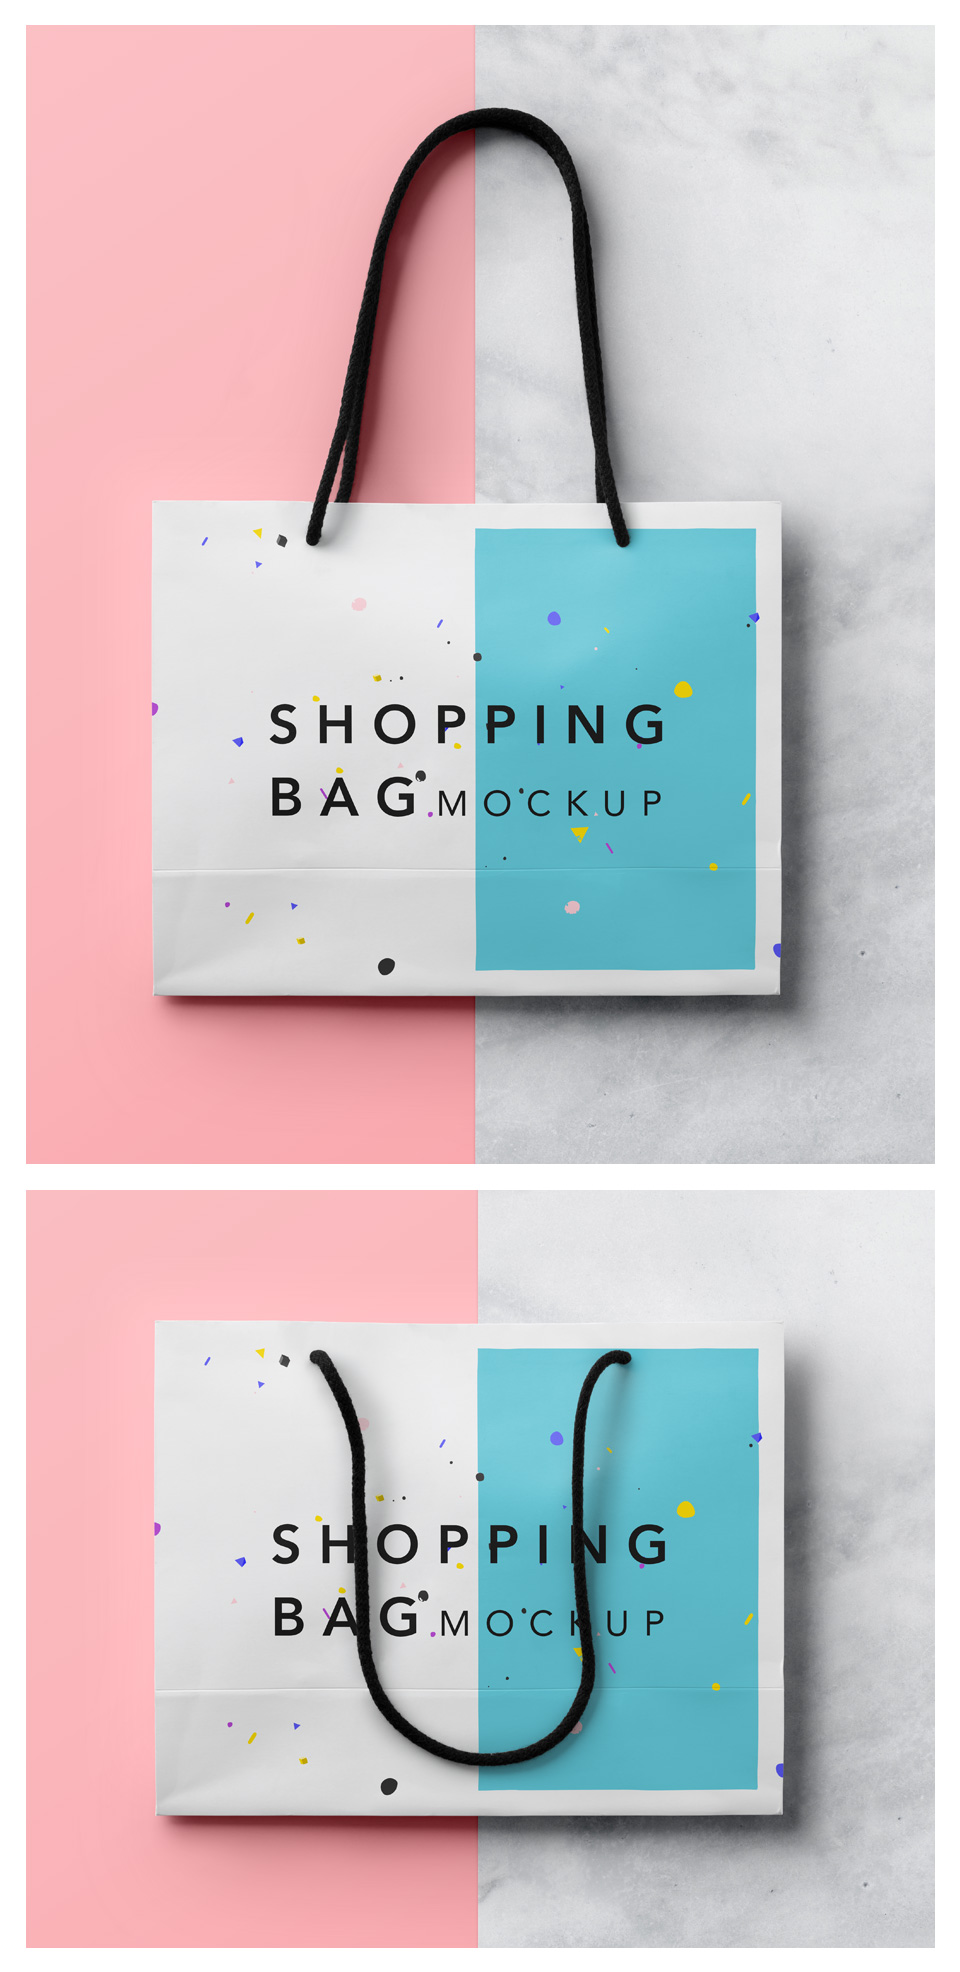 十分适合女性购物的手提袋Shopping-Bag-Mocku